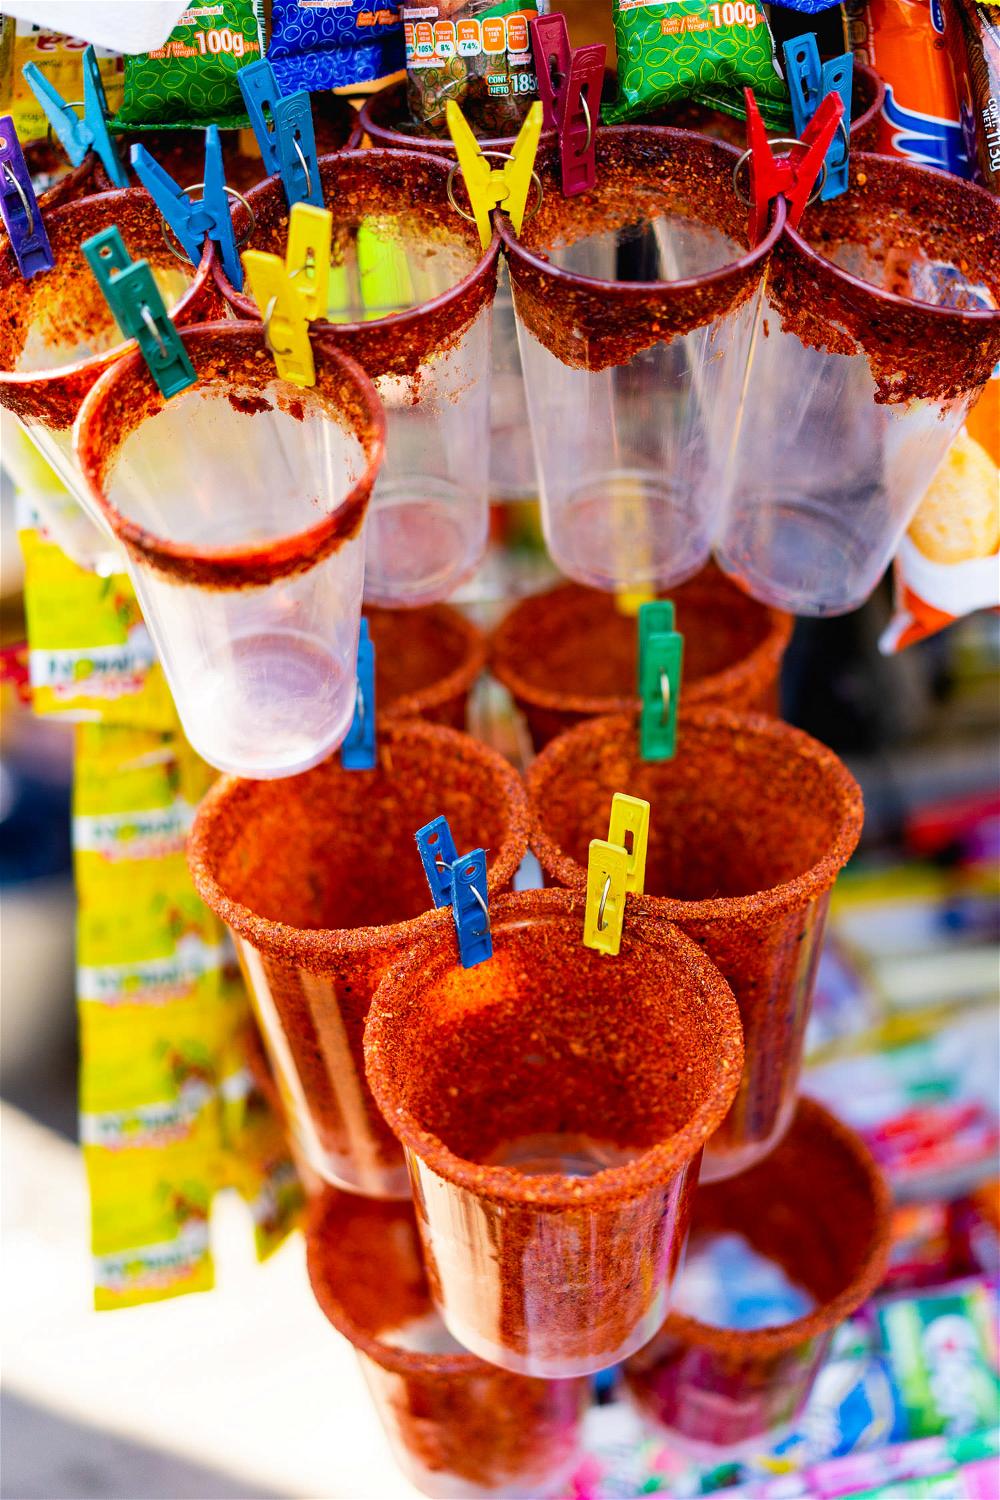 Street snacks vendor selling cups at Bosque de Chapultepec Mexico City CDMX